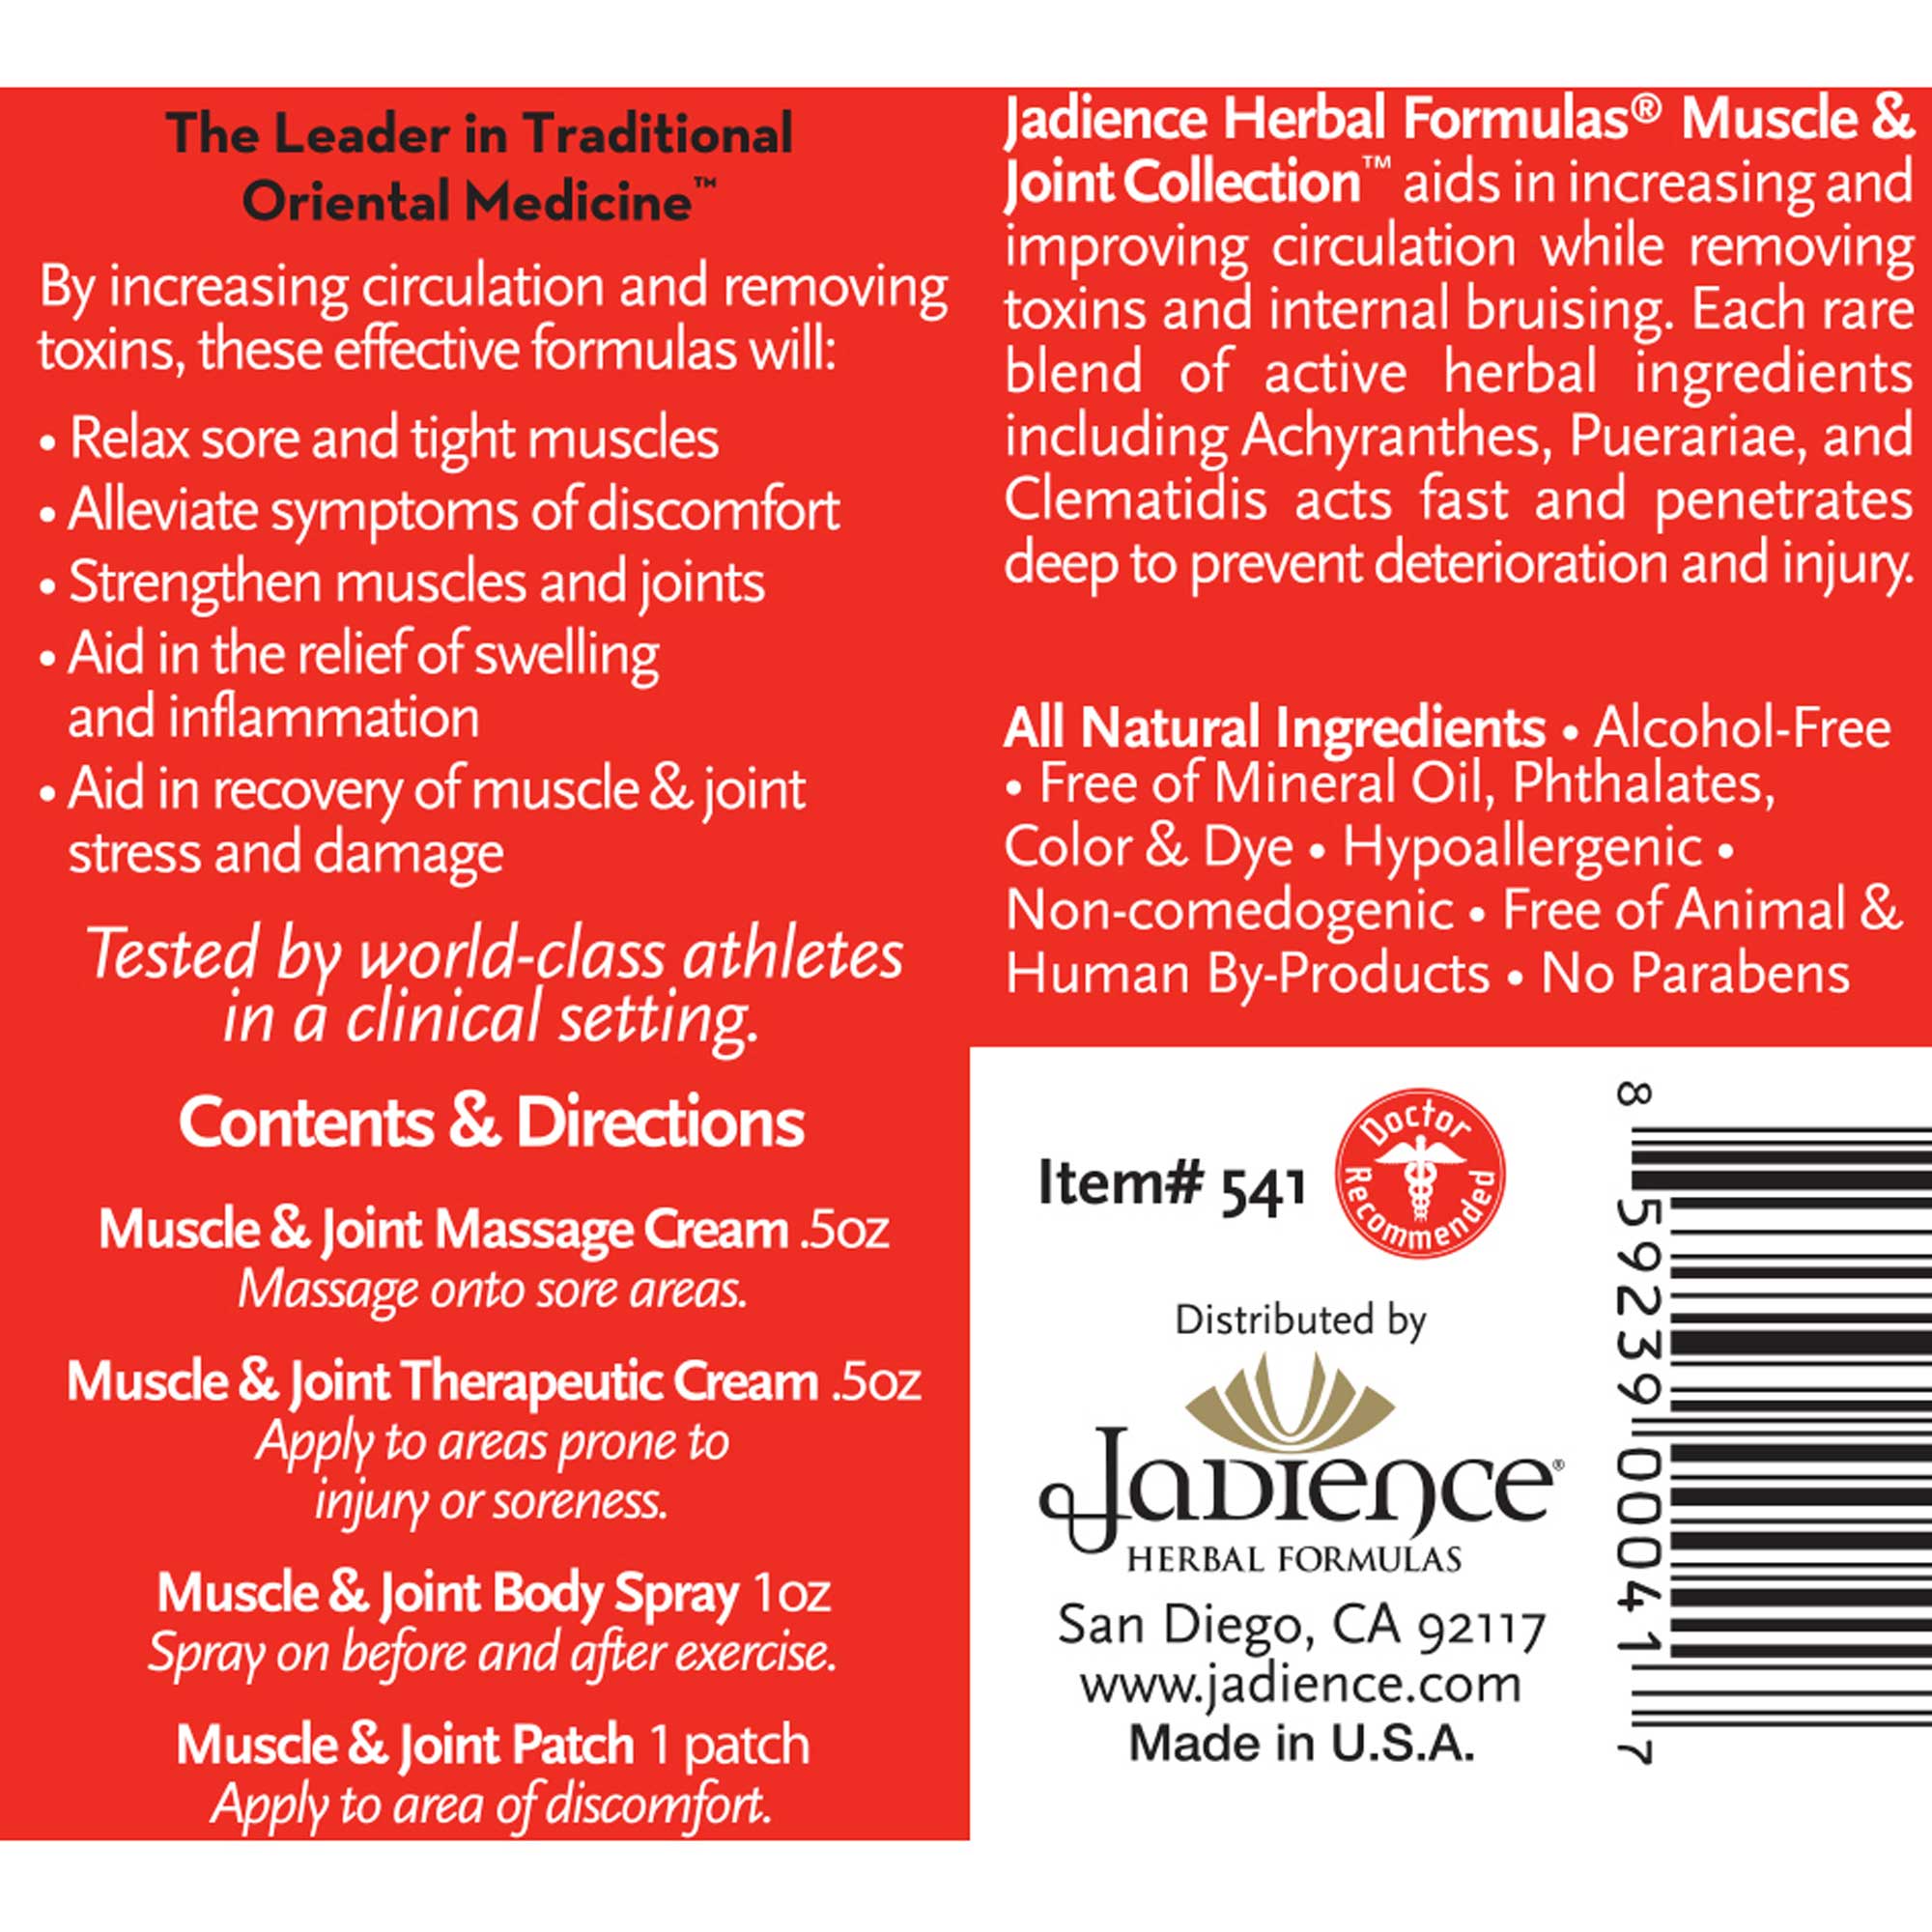 Jadience Herbal Formulas Muscle and Joint Travel Kit Ingredients